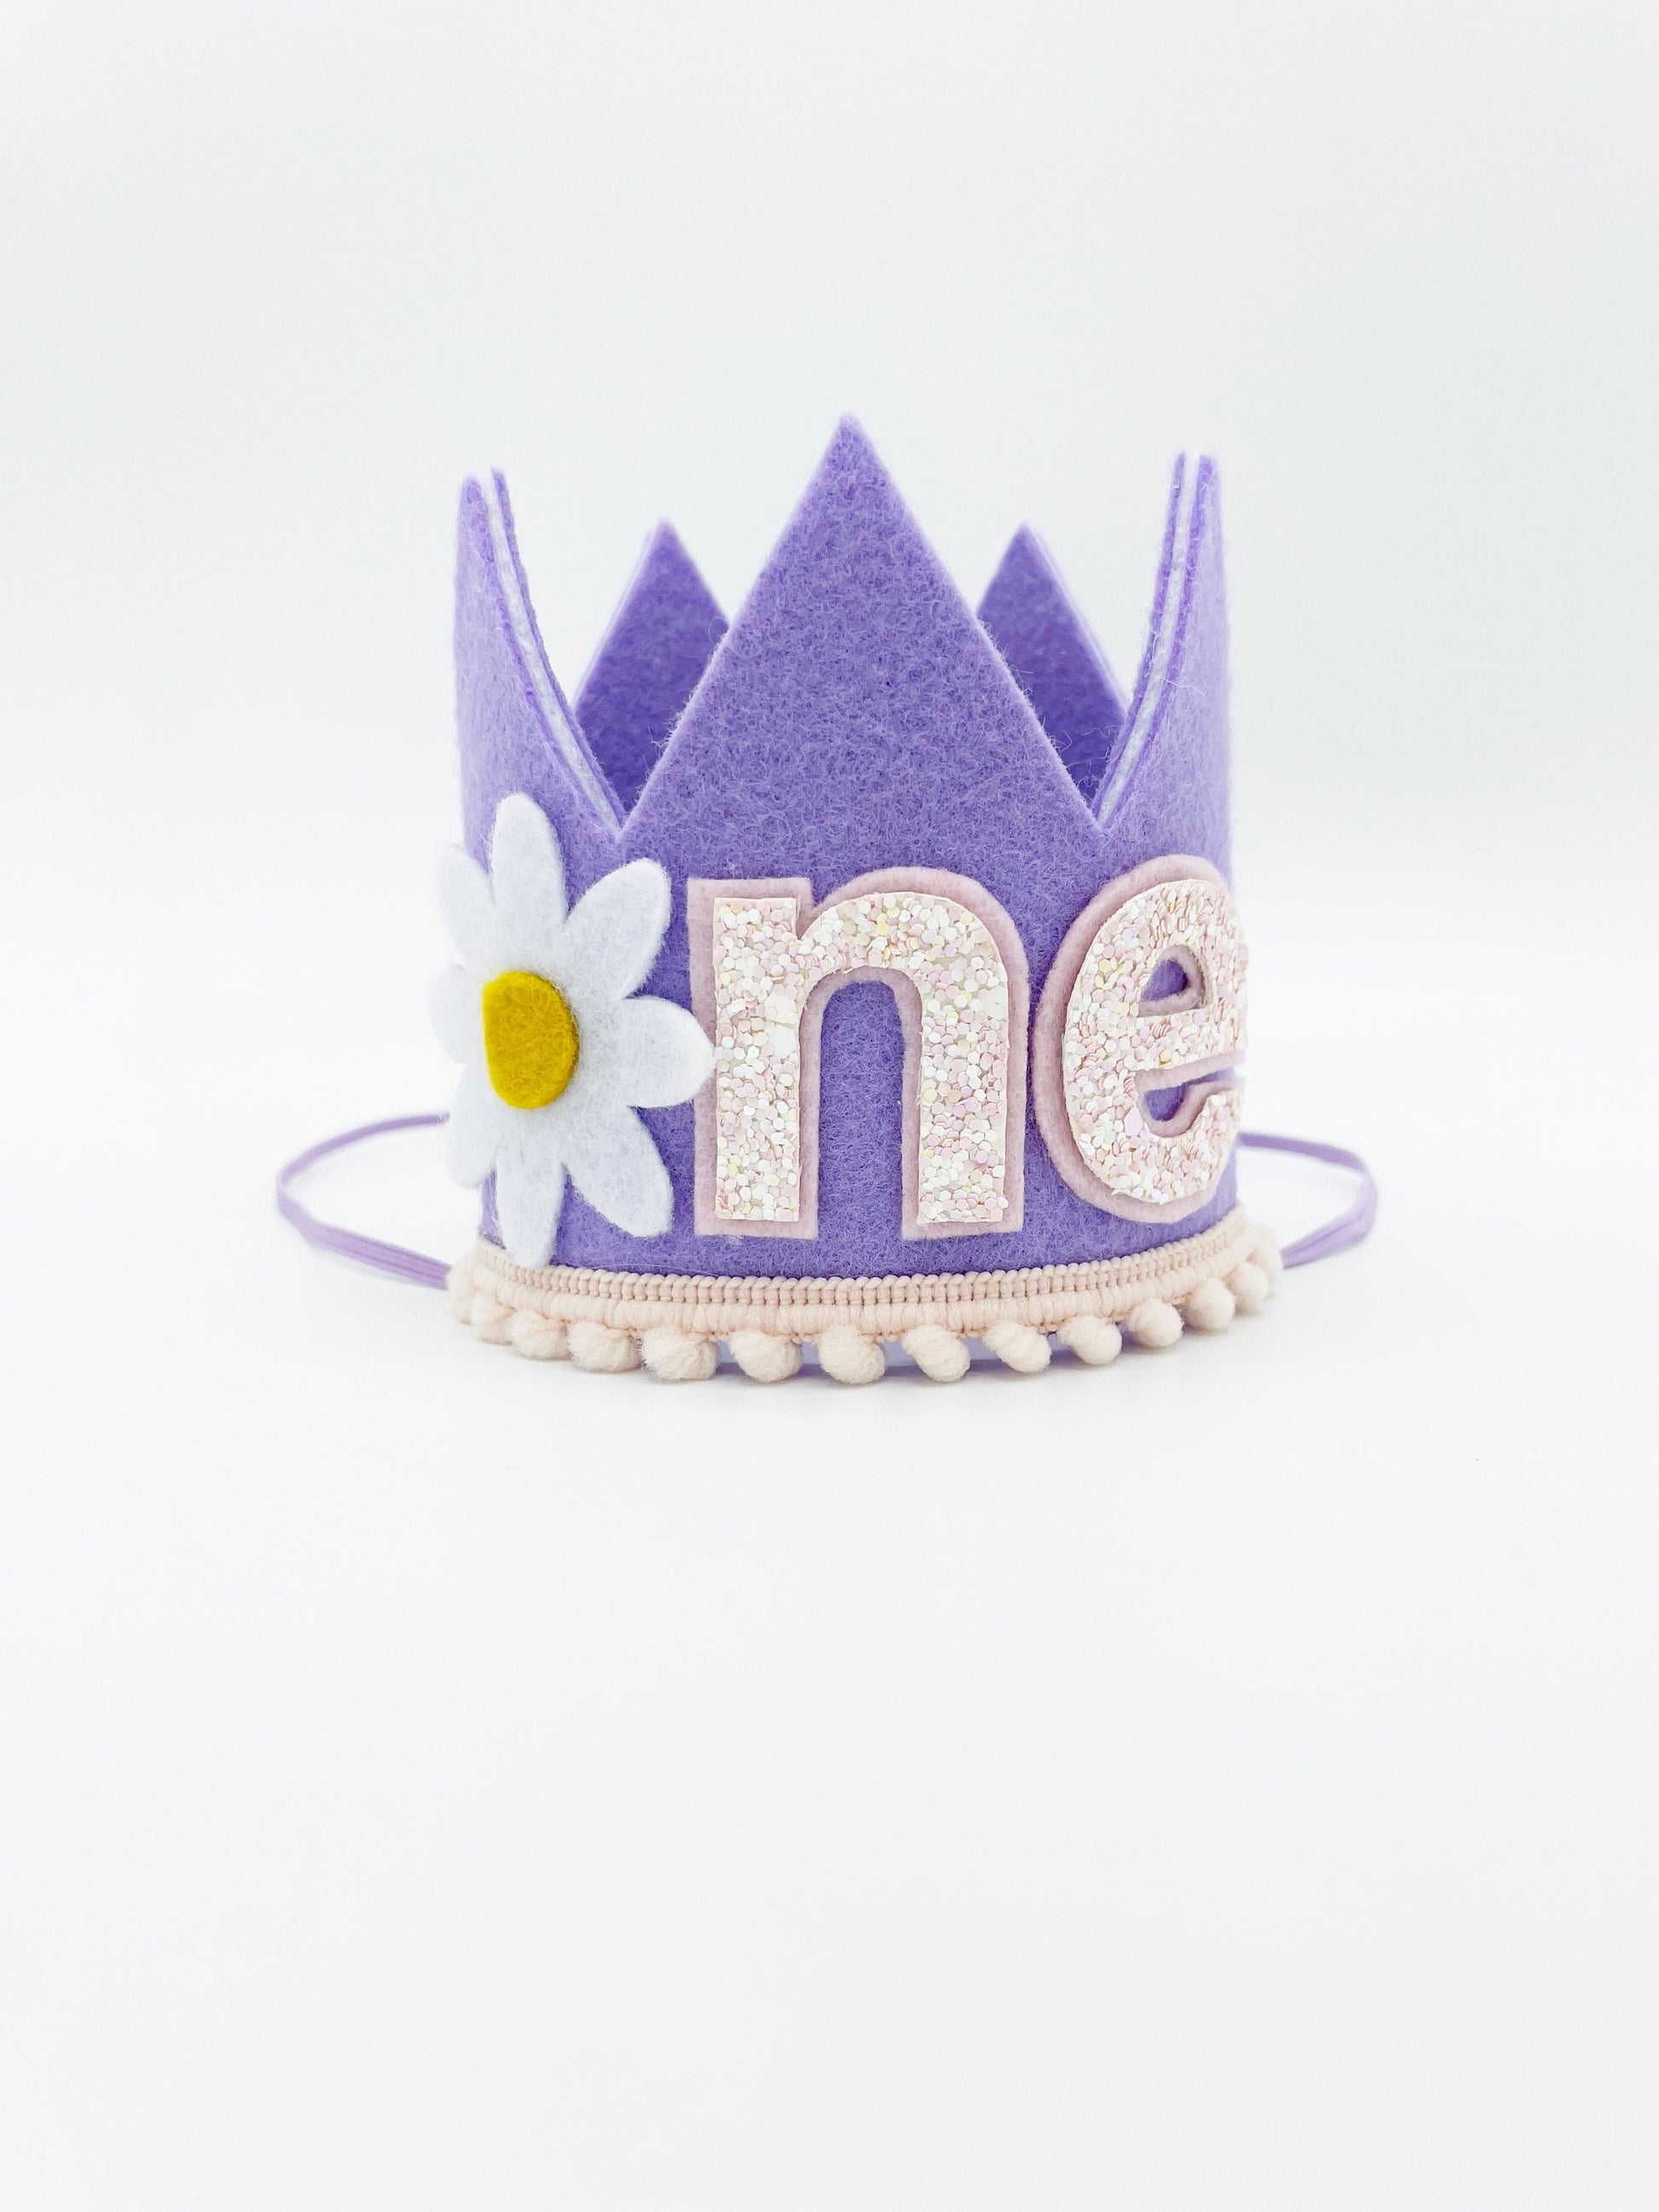 Purple felt crown